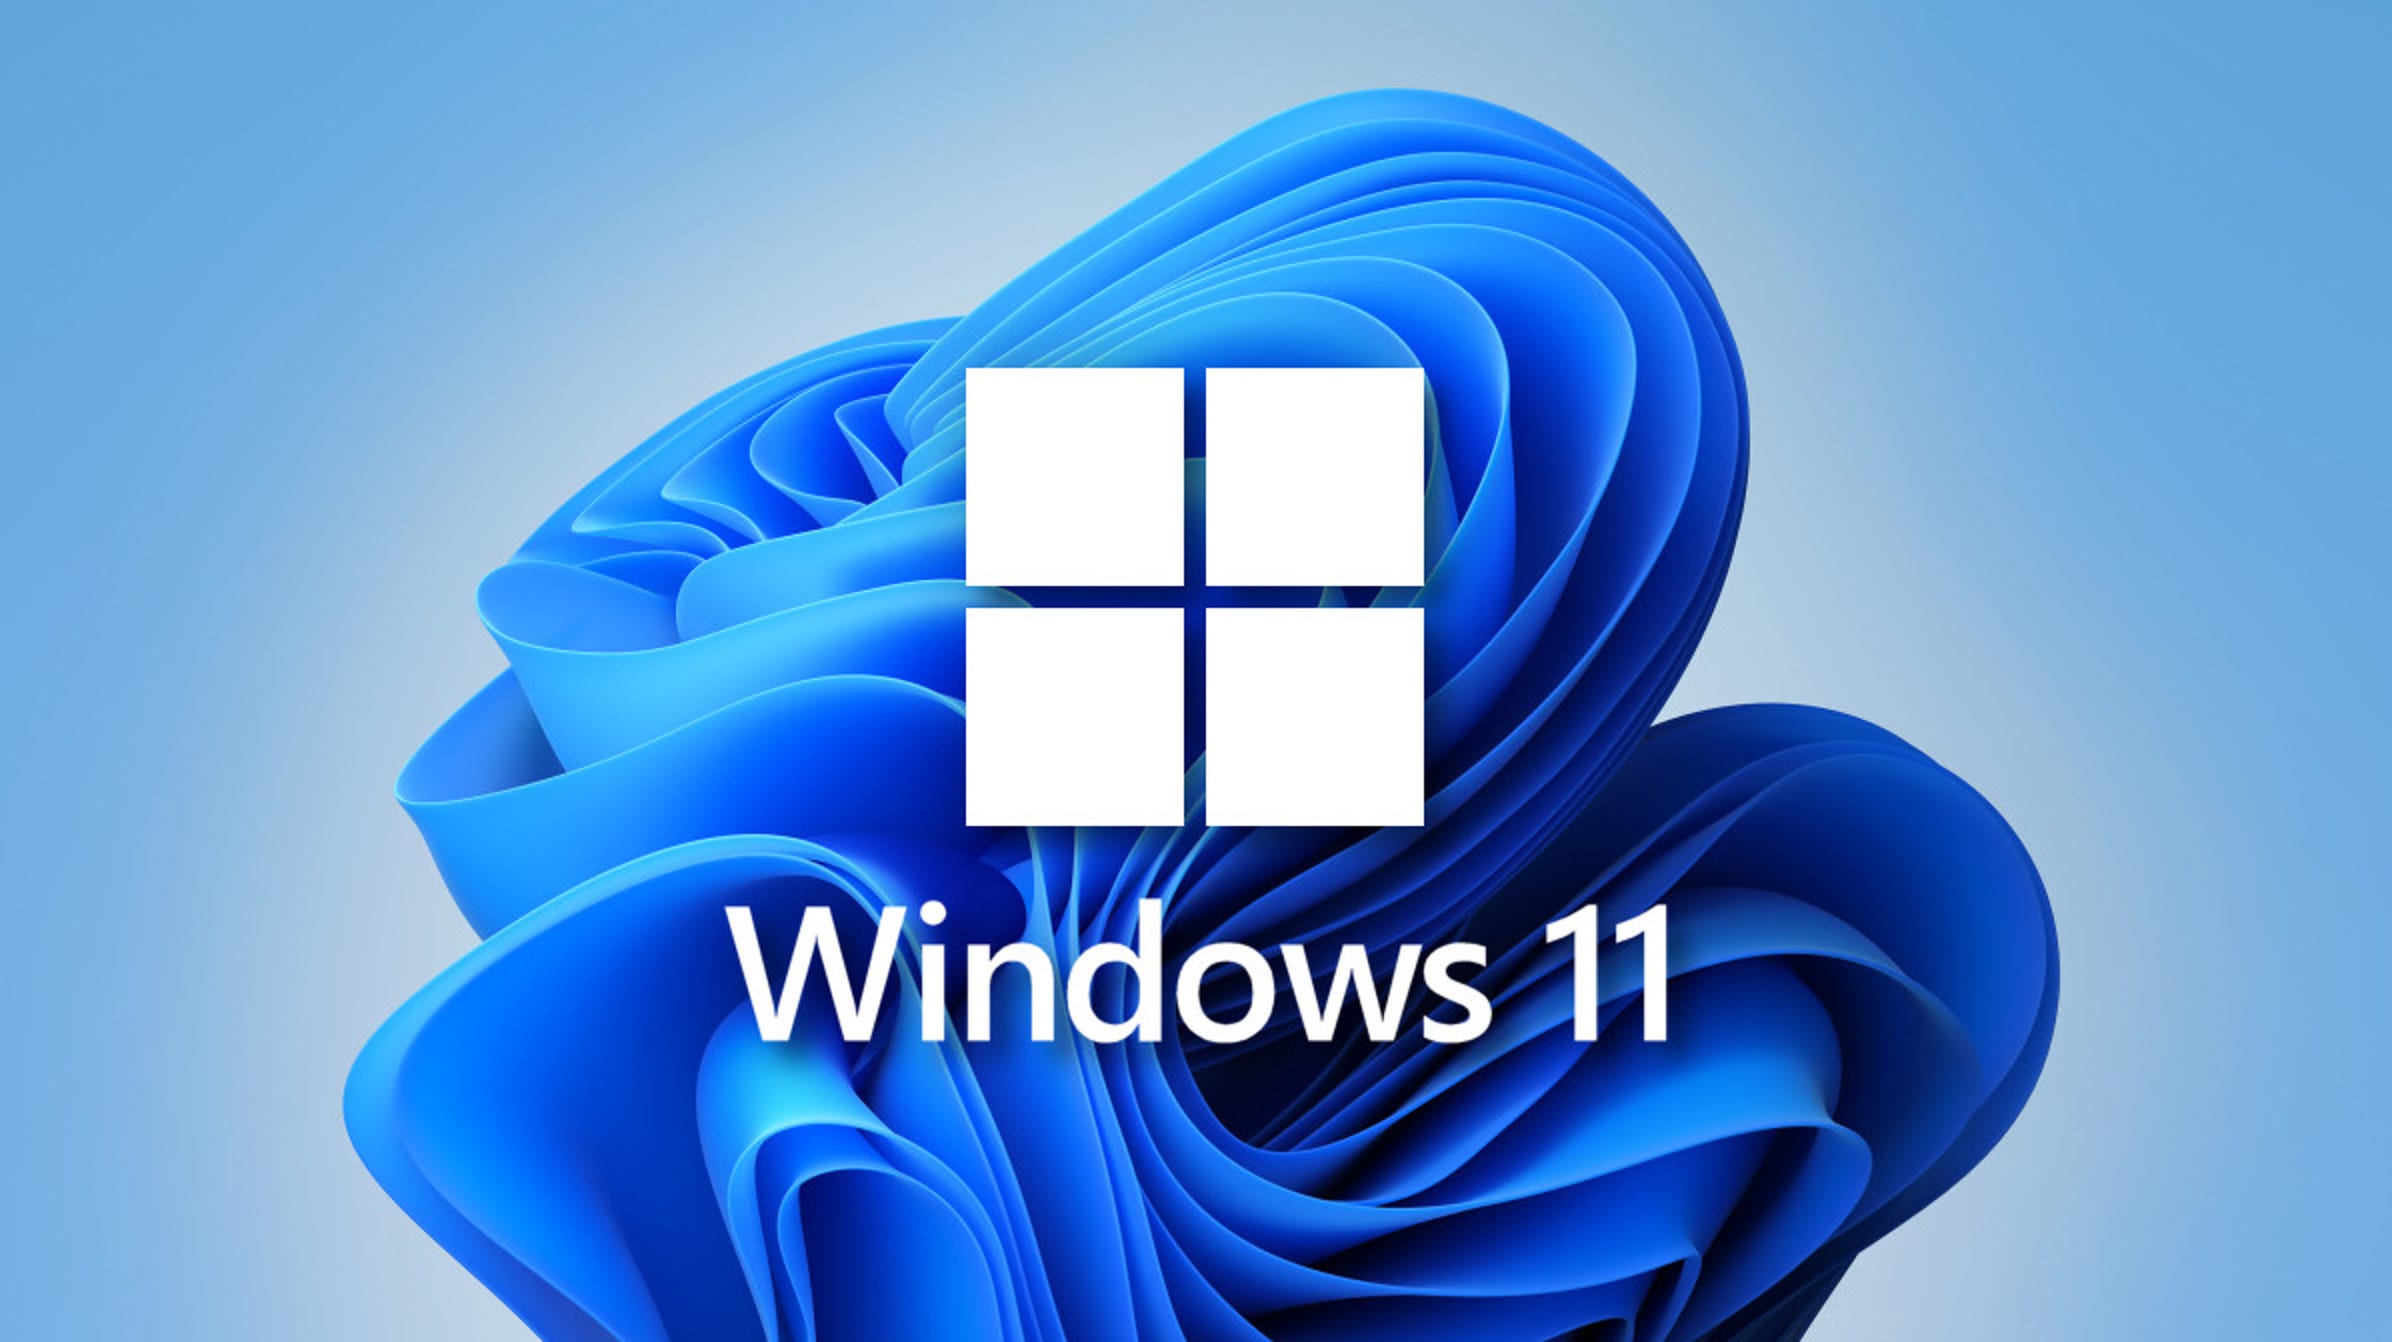 Gebruikers van Windows 10 beginnen nieuwe advertenties te ontvangen waarin hen wordt gevraagd te upgraden naar Windows 11